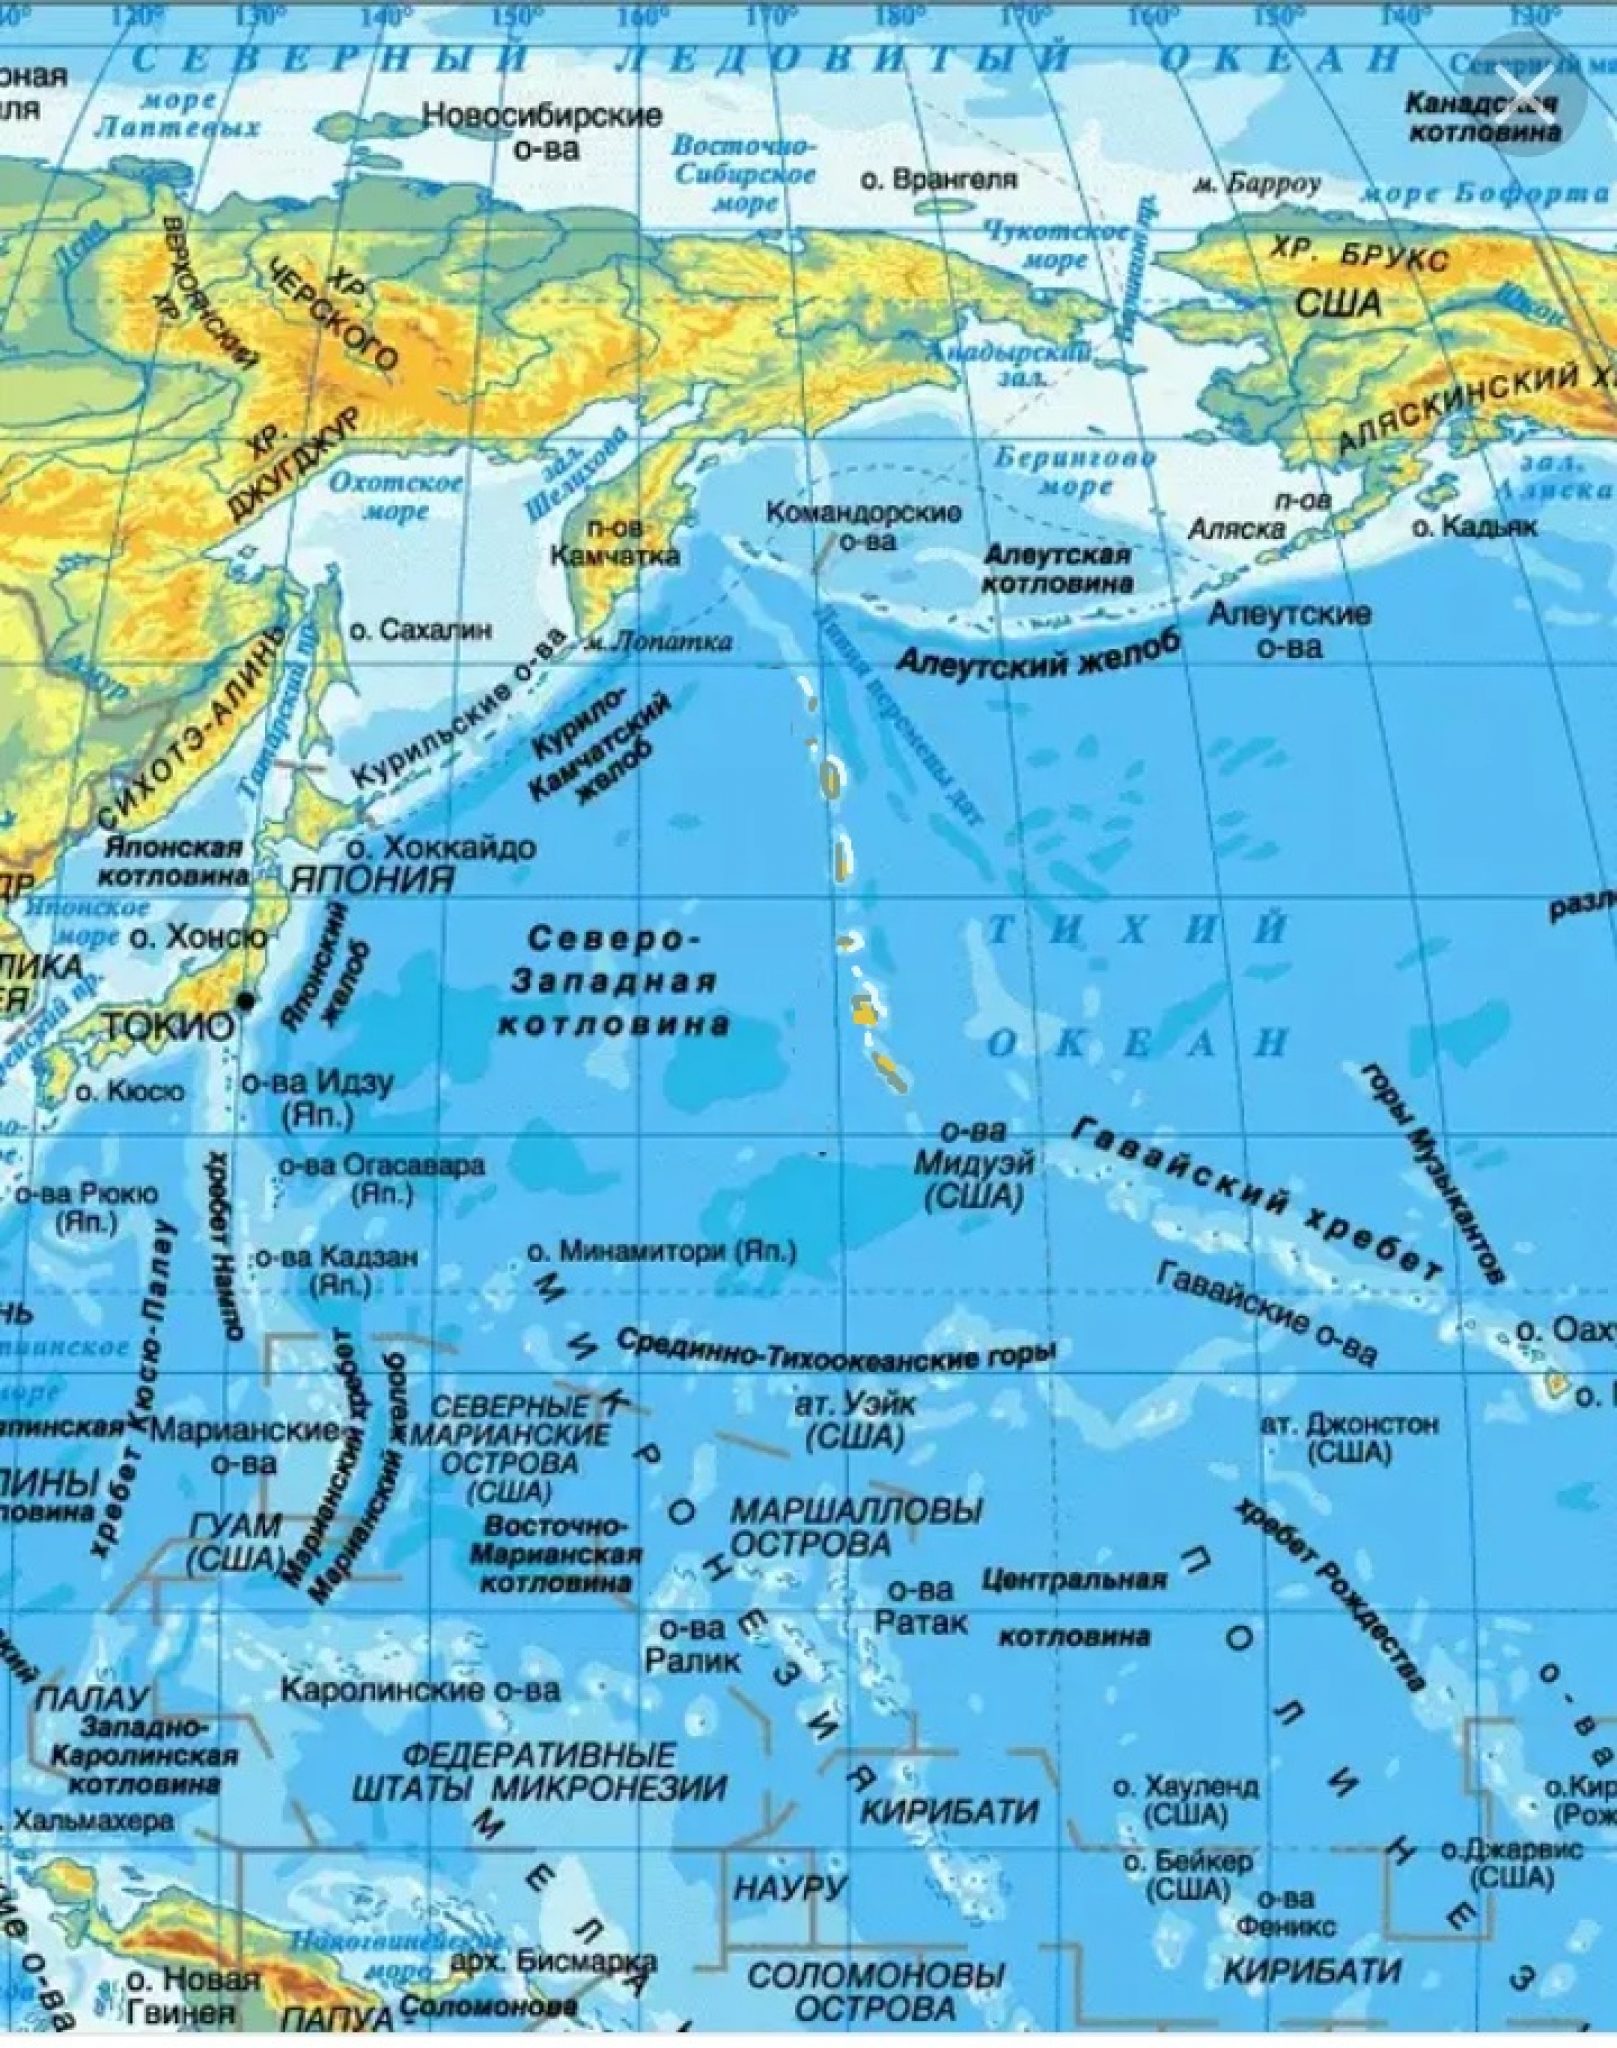 Название полуостровов тихого океана. Северная часть Тихого океана на карте. Моря заливы проливы острова полуострова на карте. Тихий океан на физической карте России.